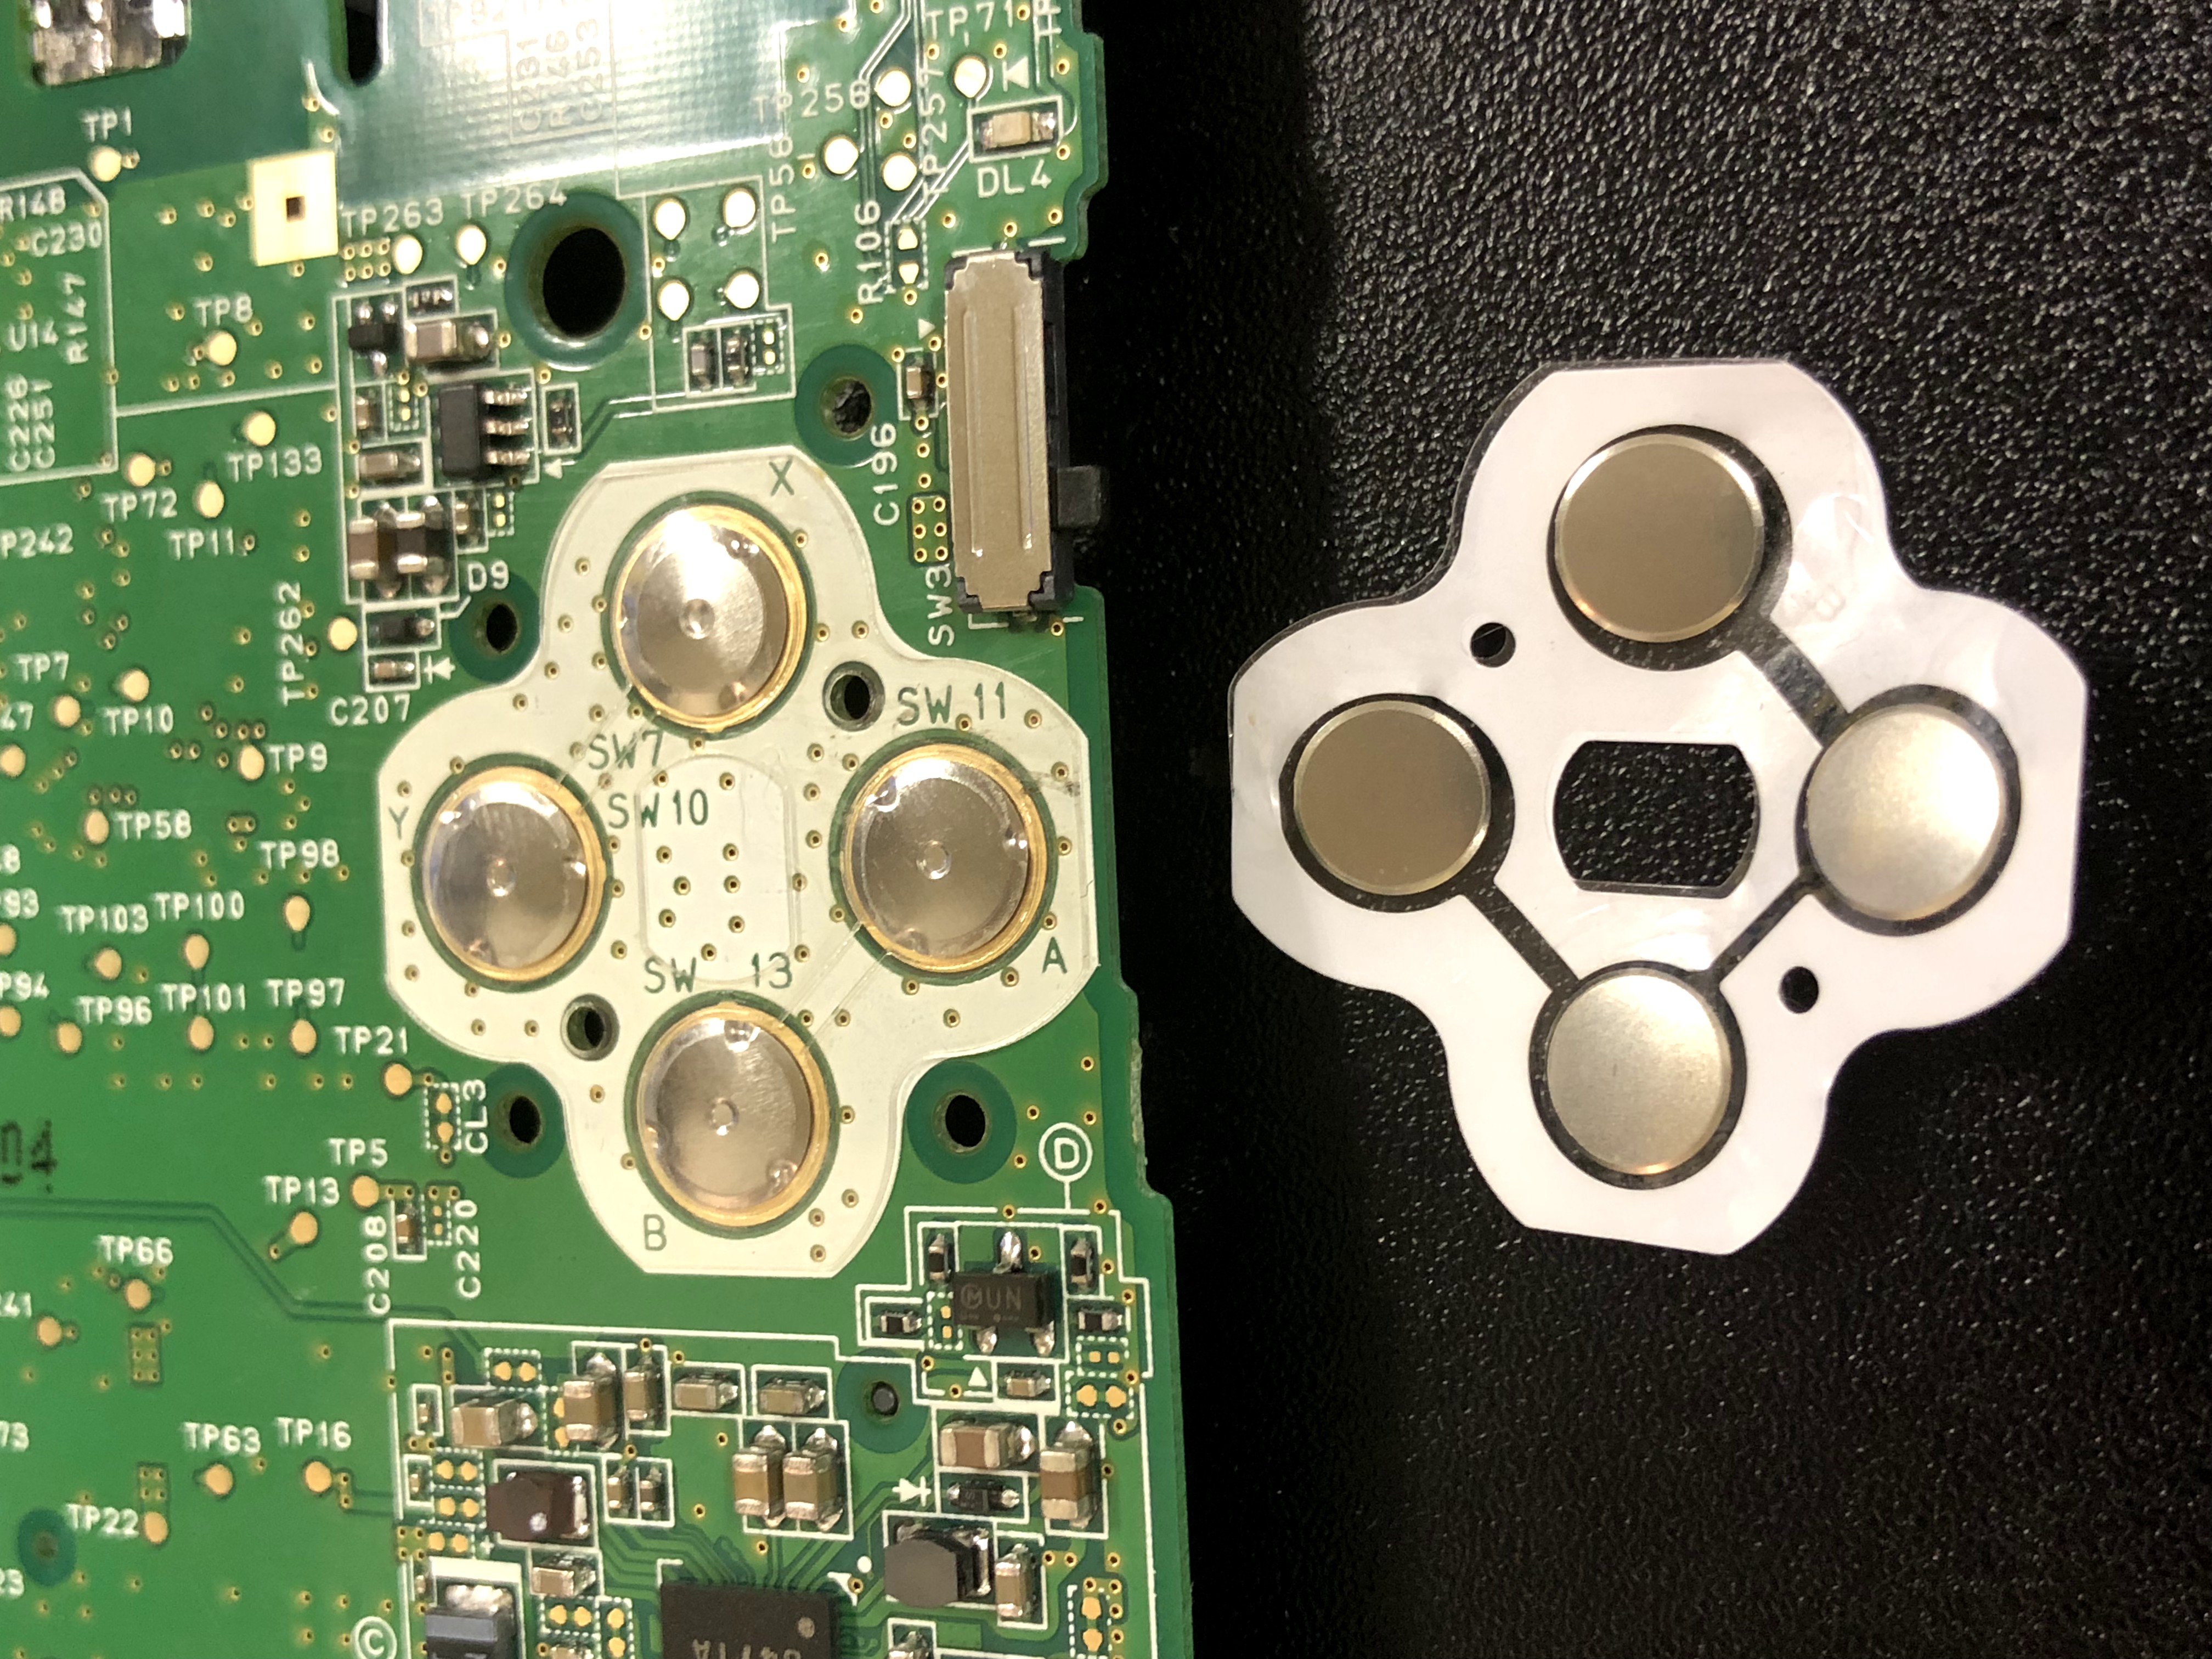 3ds Llのaボタンが効きにくくなった 内部のボタン部品交換で反応改善 Switch Nintendo3ds Psp 修理のゲームホスピタル Switch Nintendo3ds ニンテンドーds Psp 修理